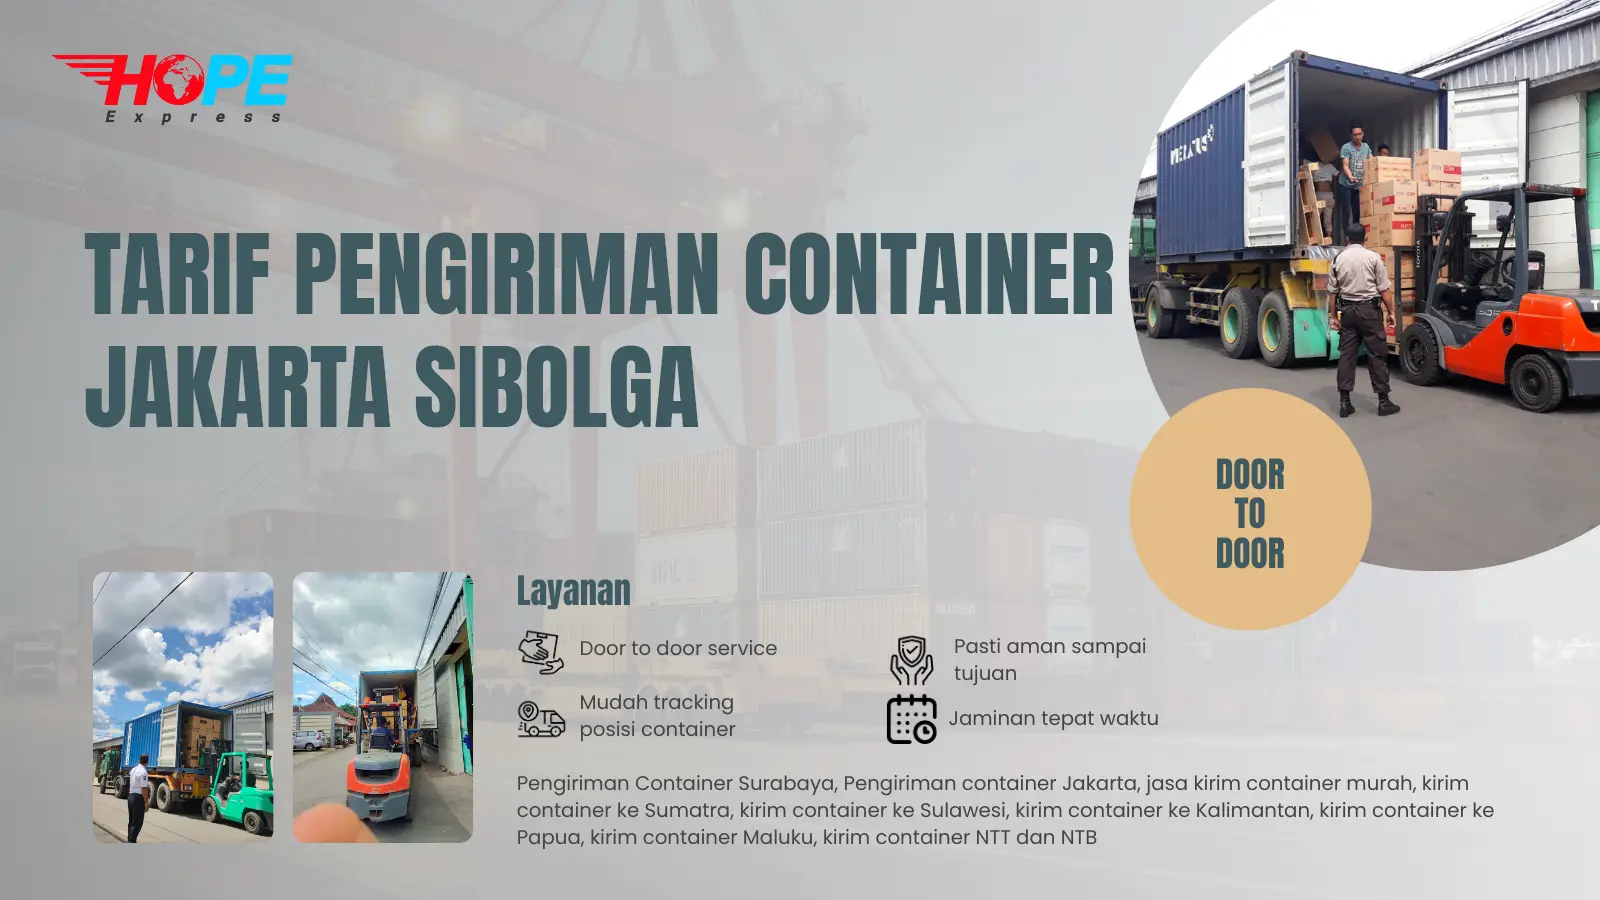 Tarif Pengiriman Container Jakarta Sibolga